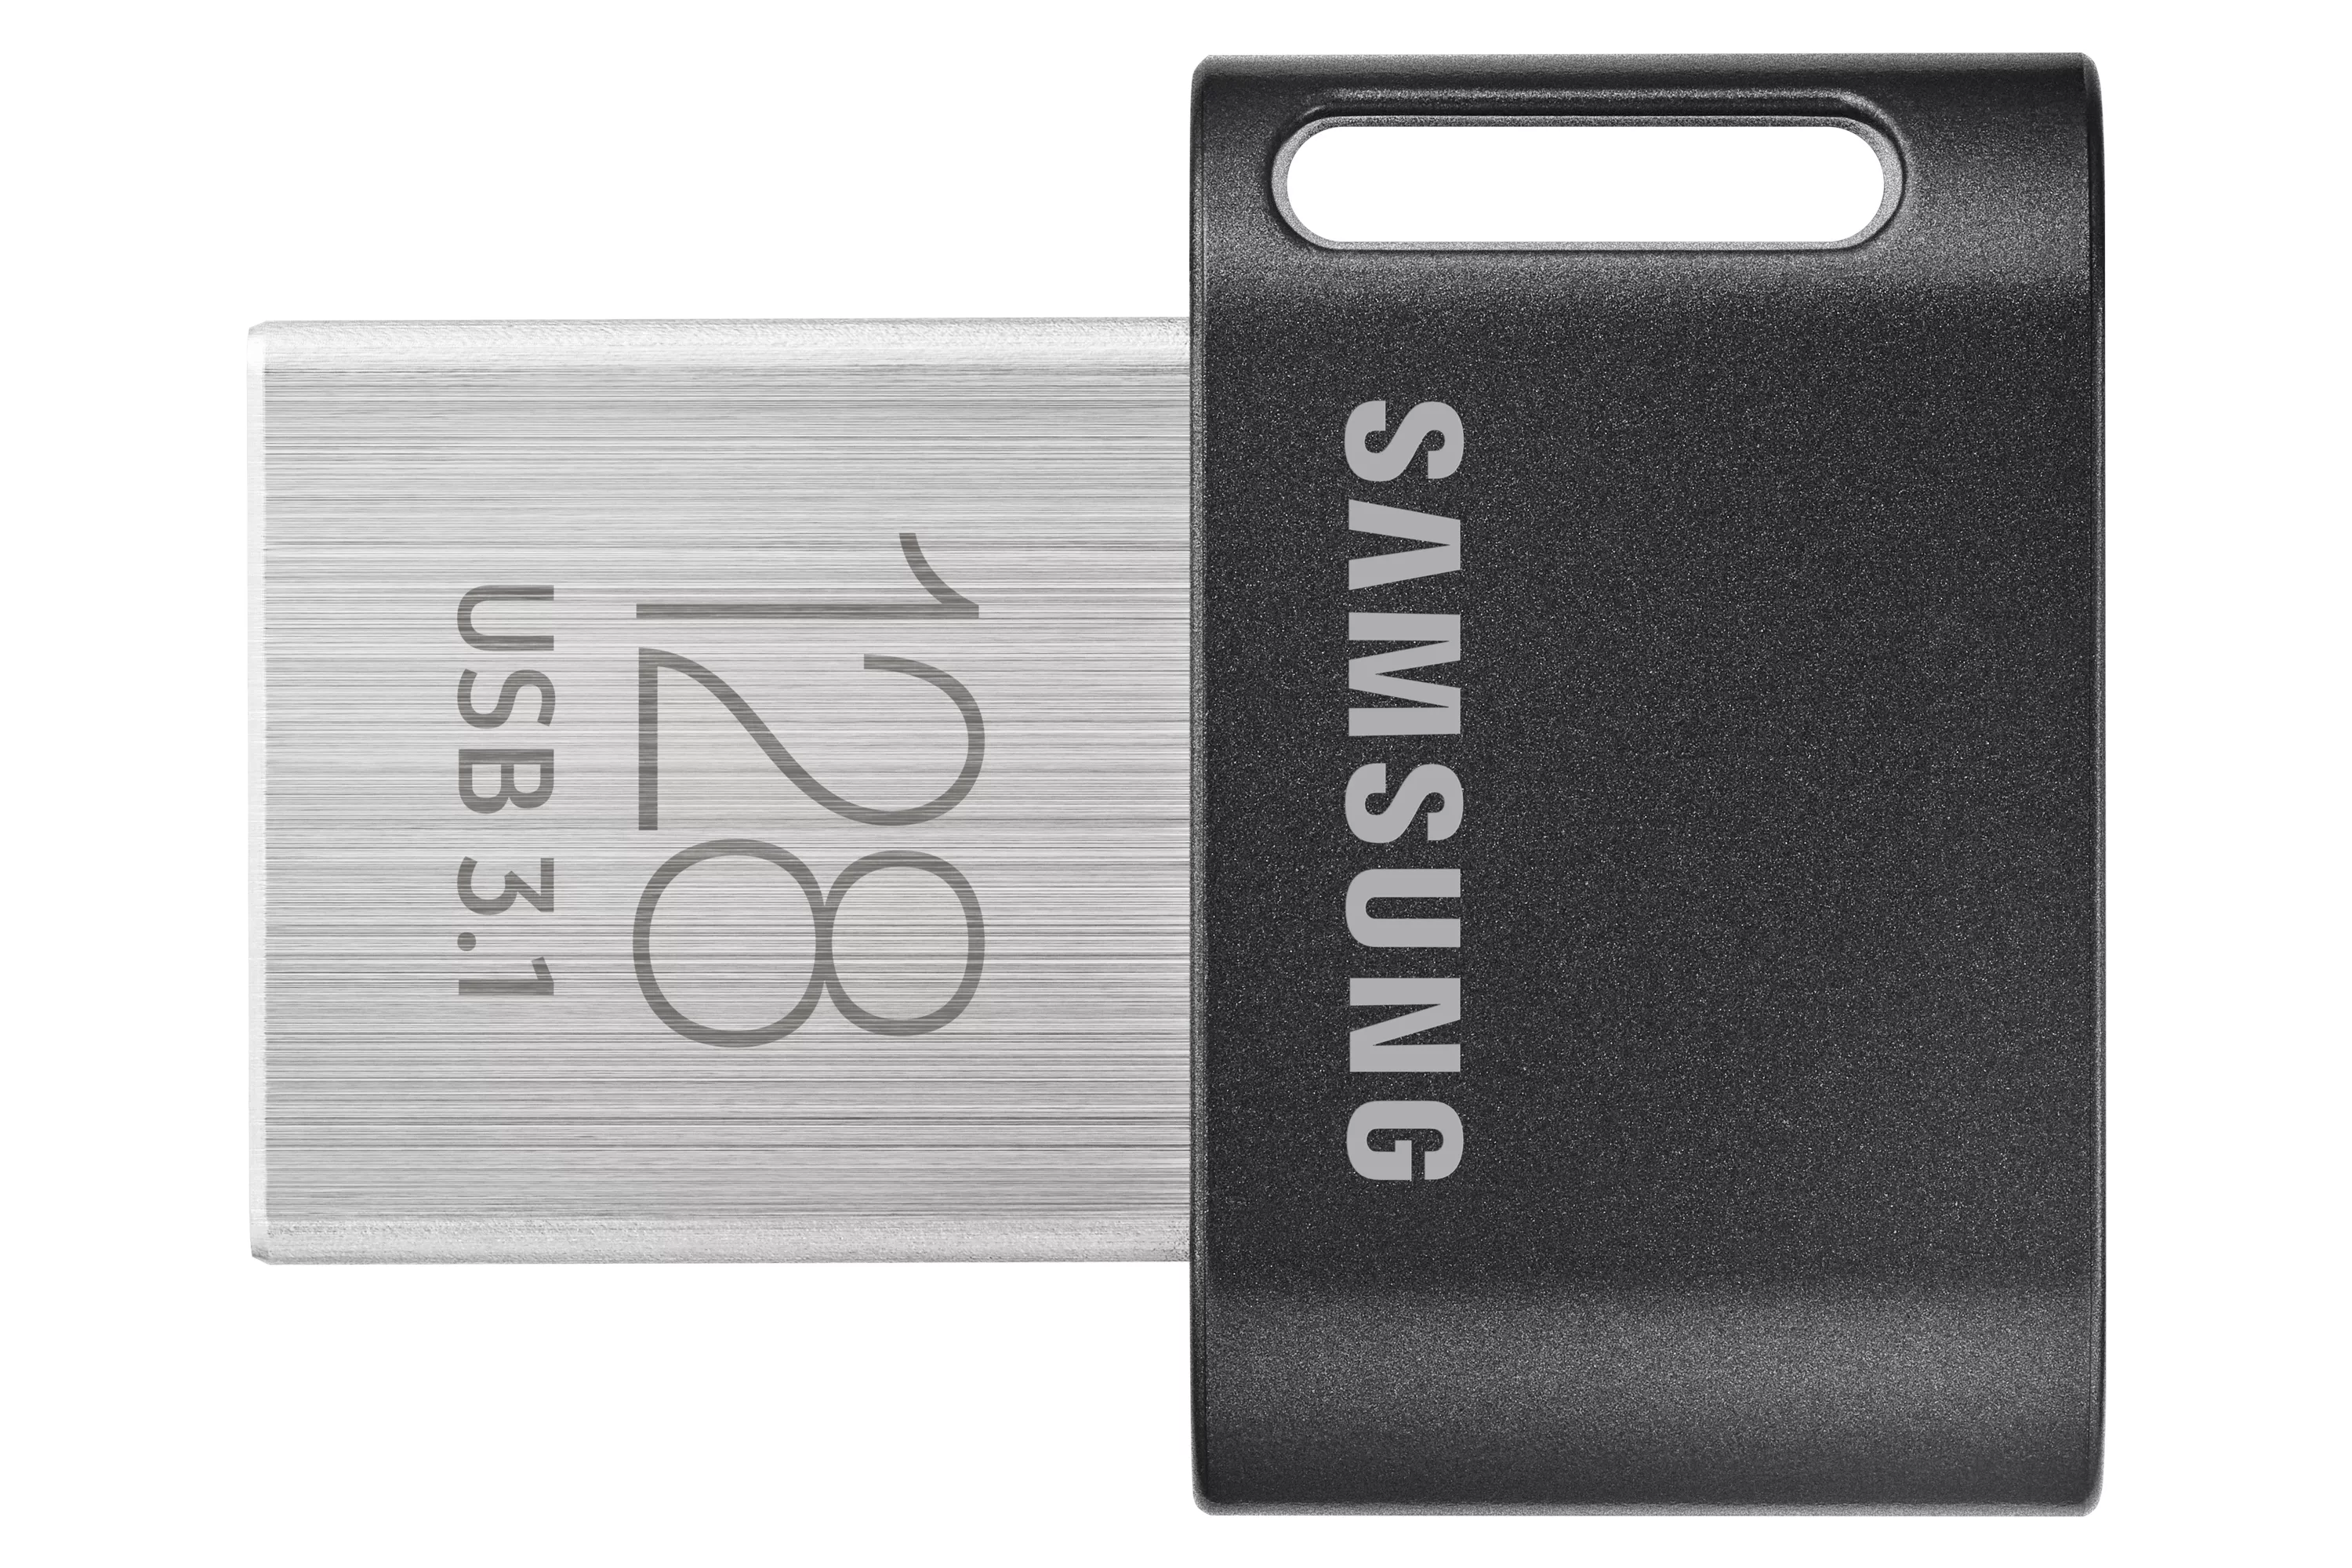 Achat SAMSUNG FIT PLUS 128Go USB 3.1 au meilleur prix